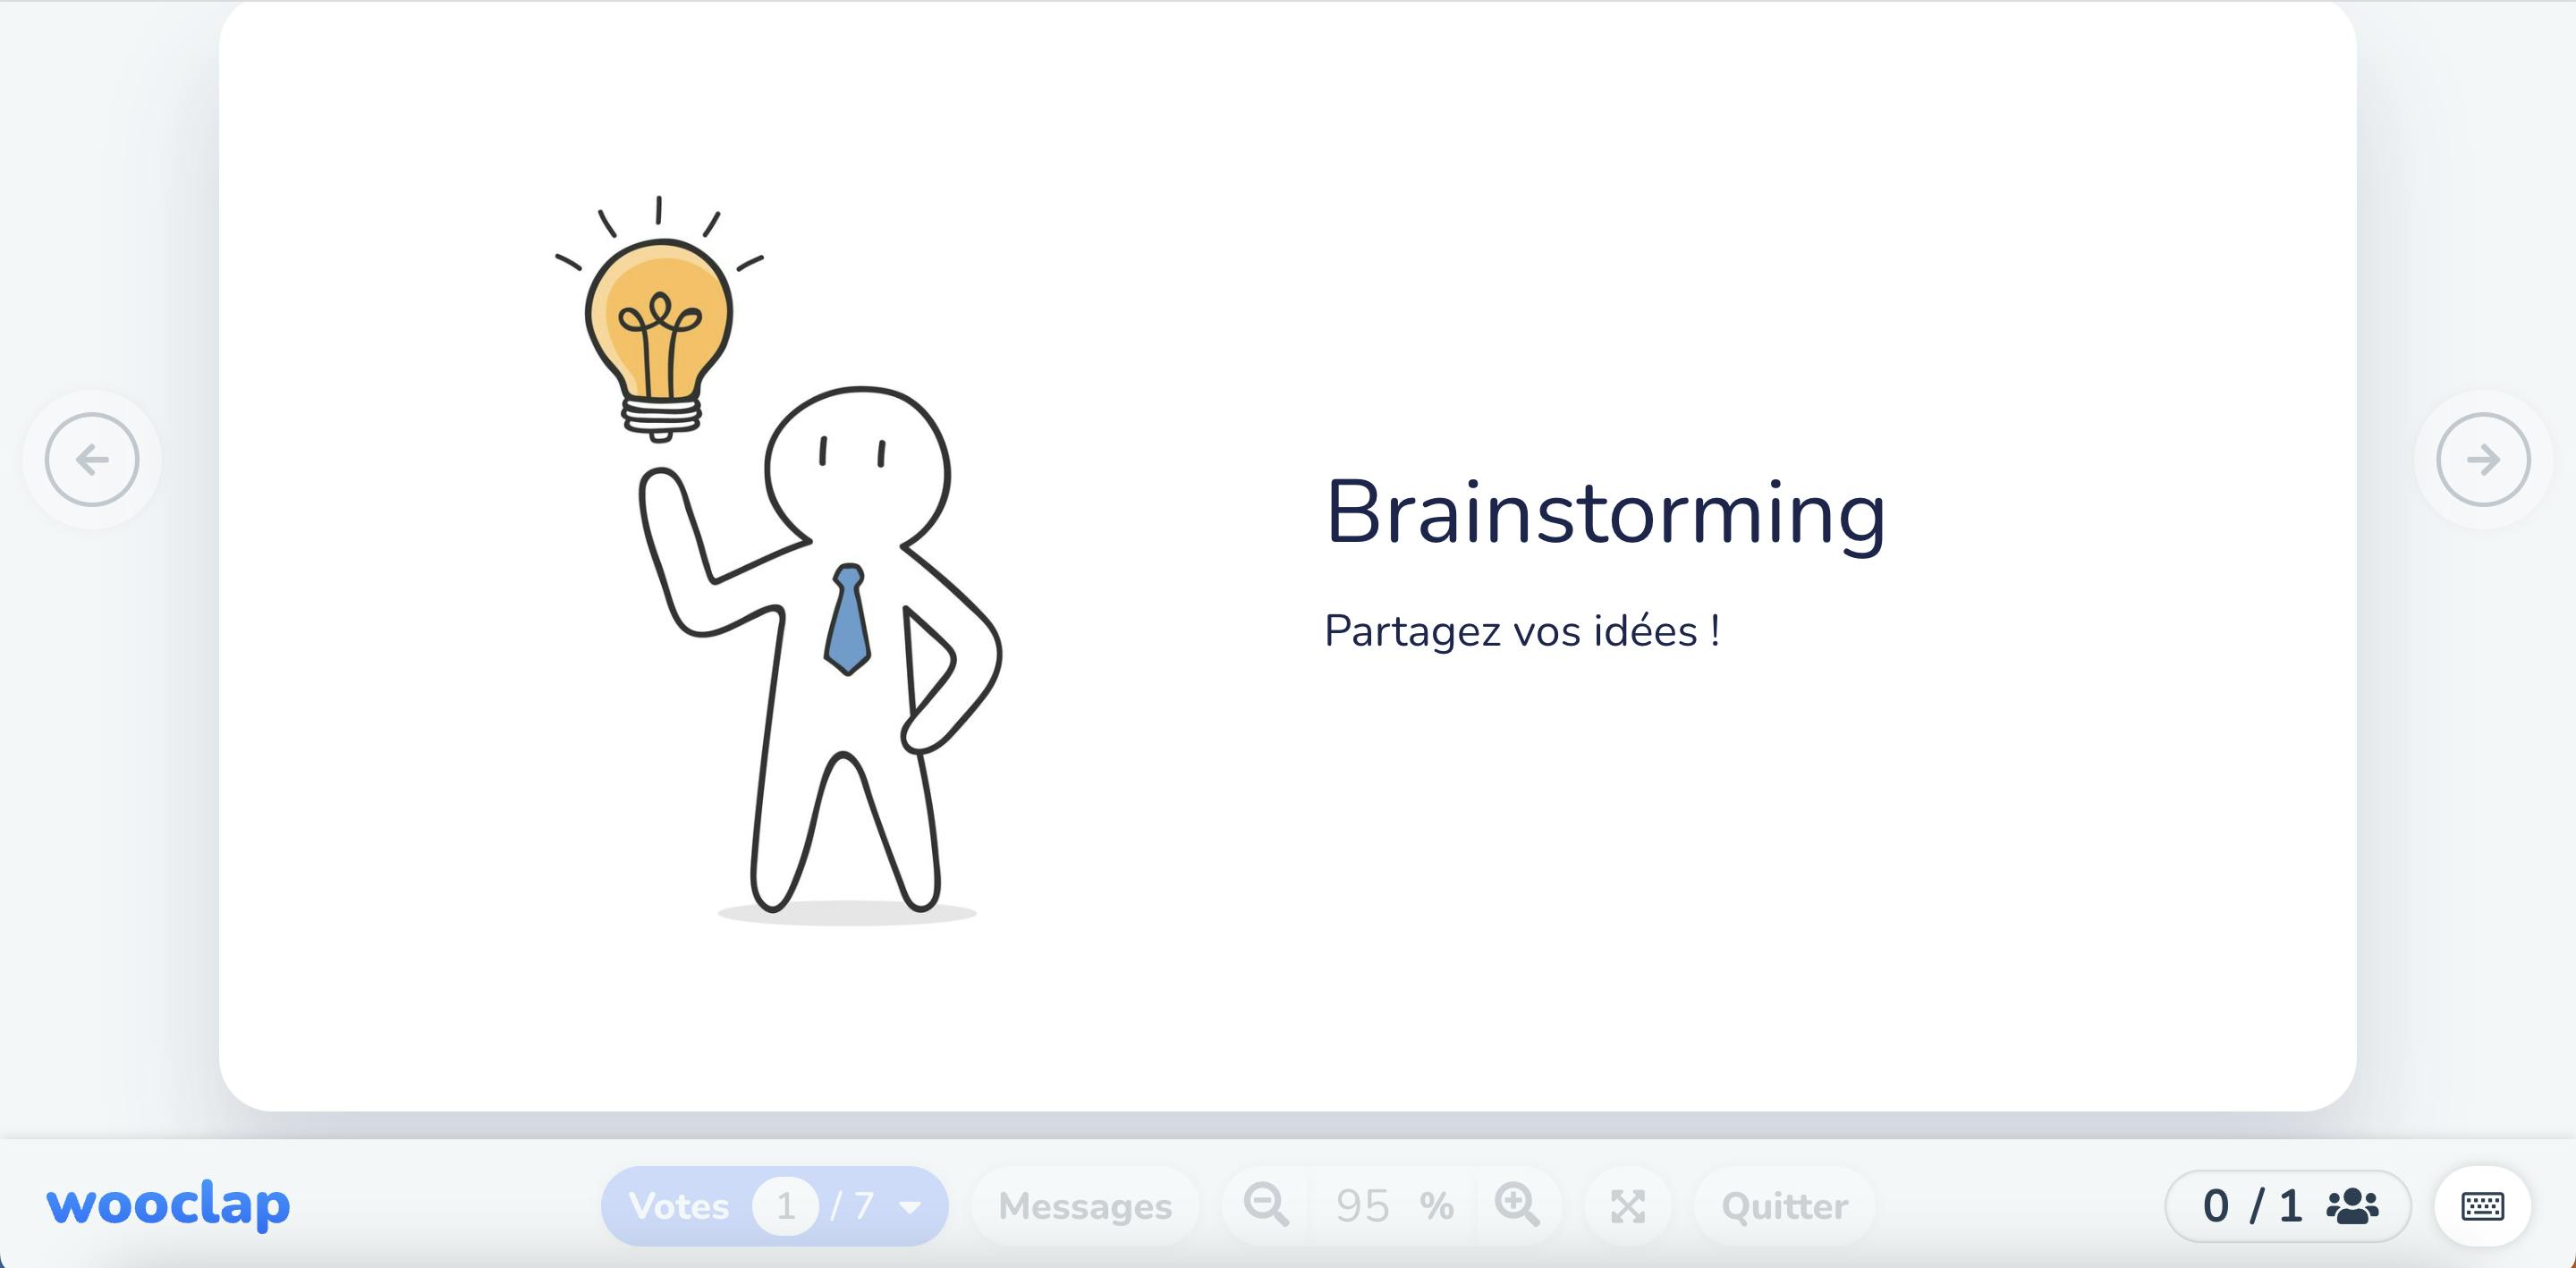 
Brainstorming
Partagez vos idées !